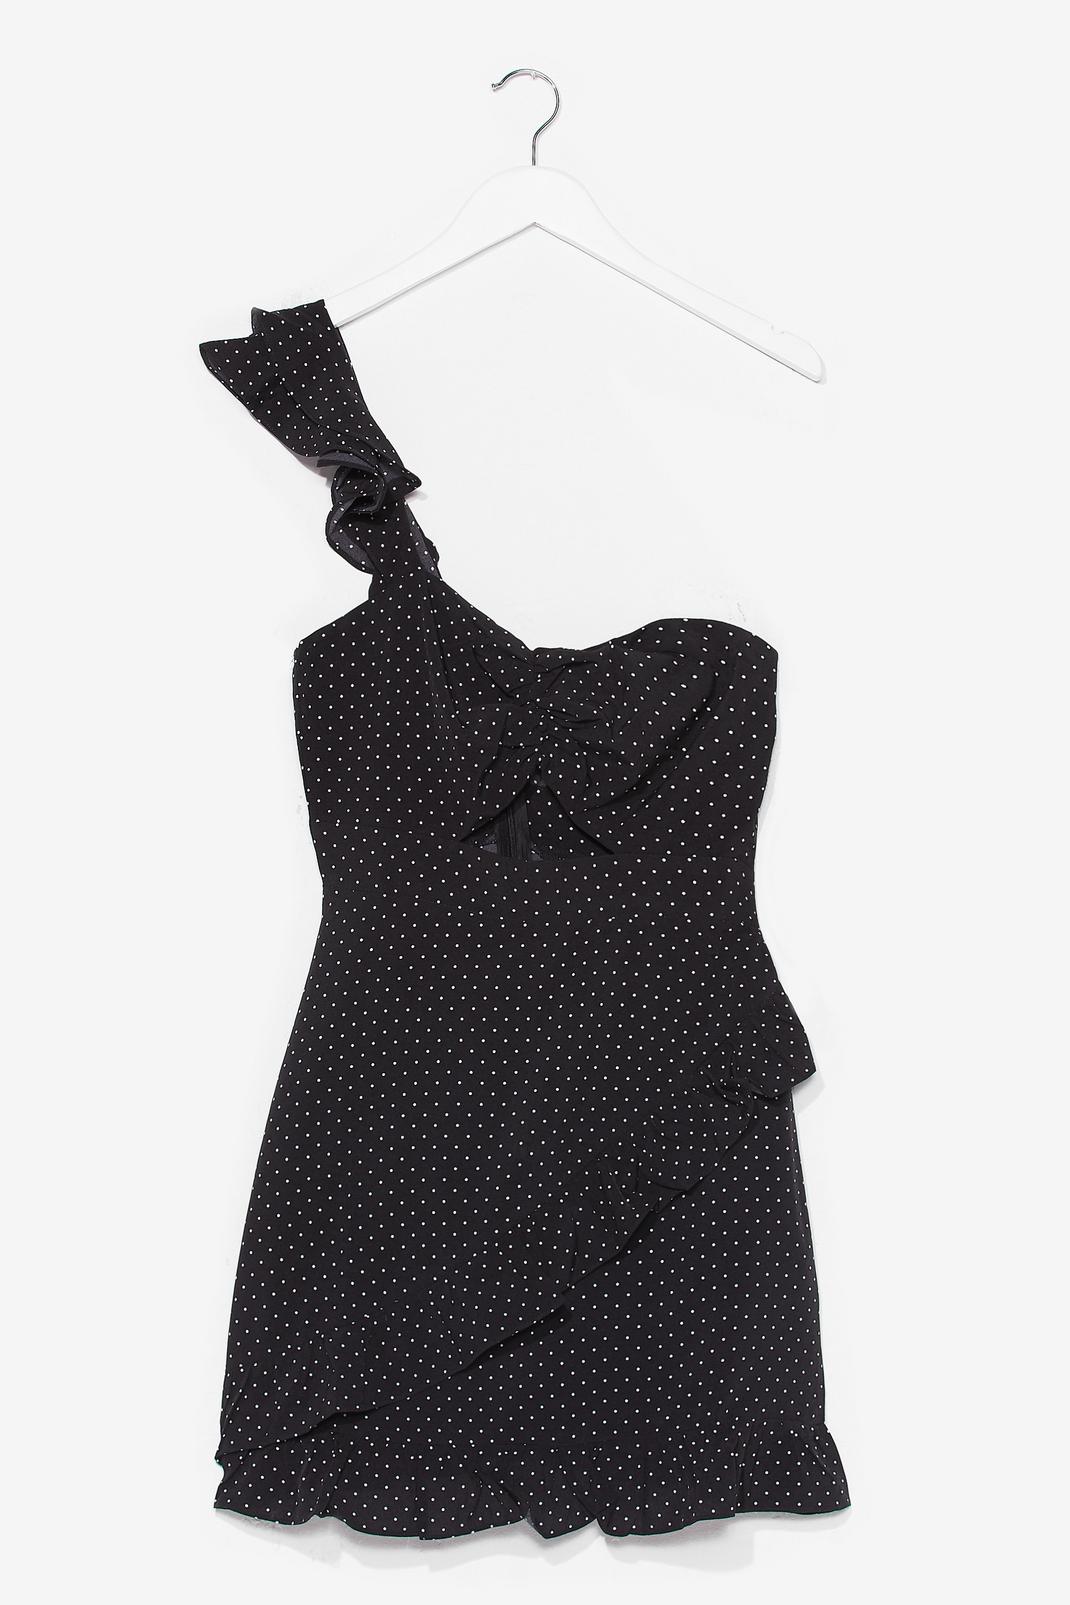 Black Polka Dot One Shoulder Fitted Mini Dress image number 1